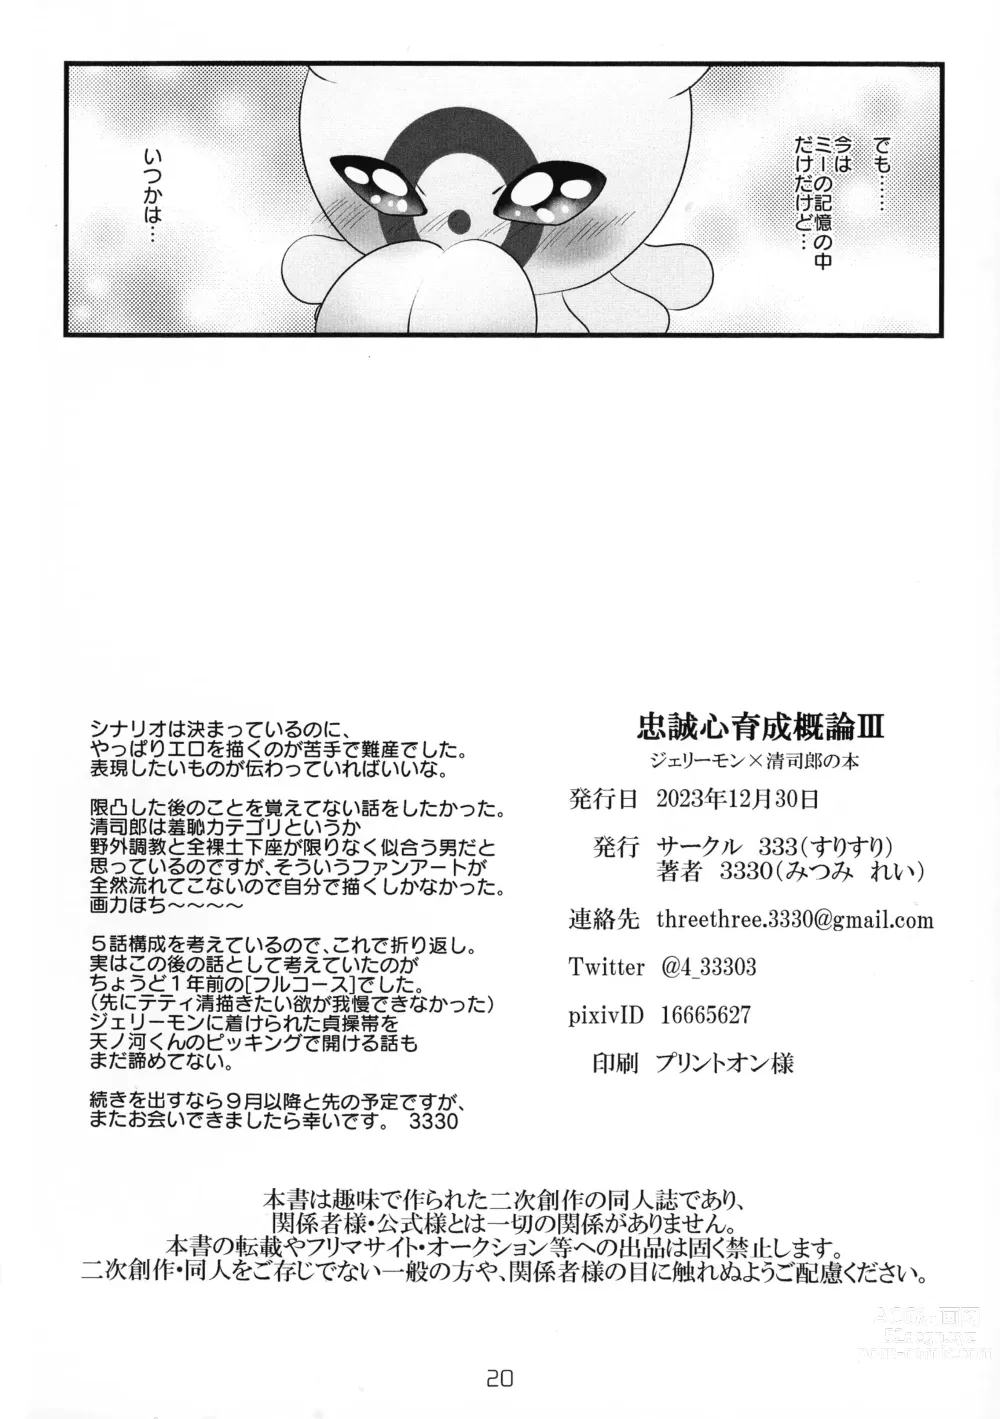 Page 21 of doujinshi Chusei kokoro ikusei gairon 3